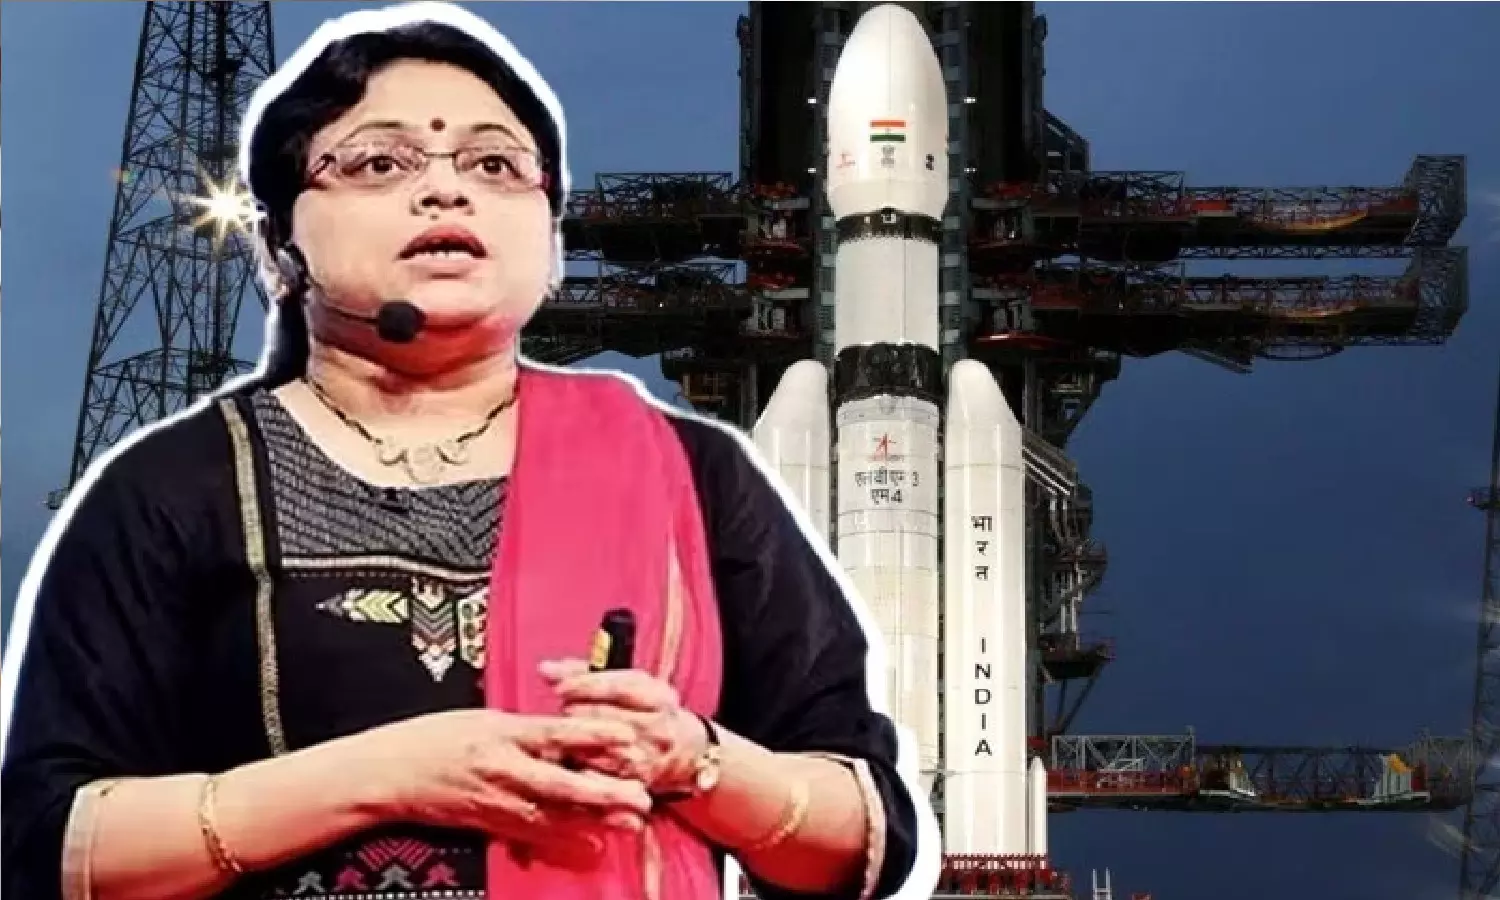 Biography Of Ritu Karidhal: भारत की रॉकेट वुमन, ISRO वैज्ञानिक ऋतु करिधाल का जीवन परिचय